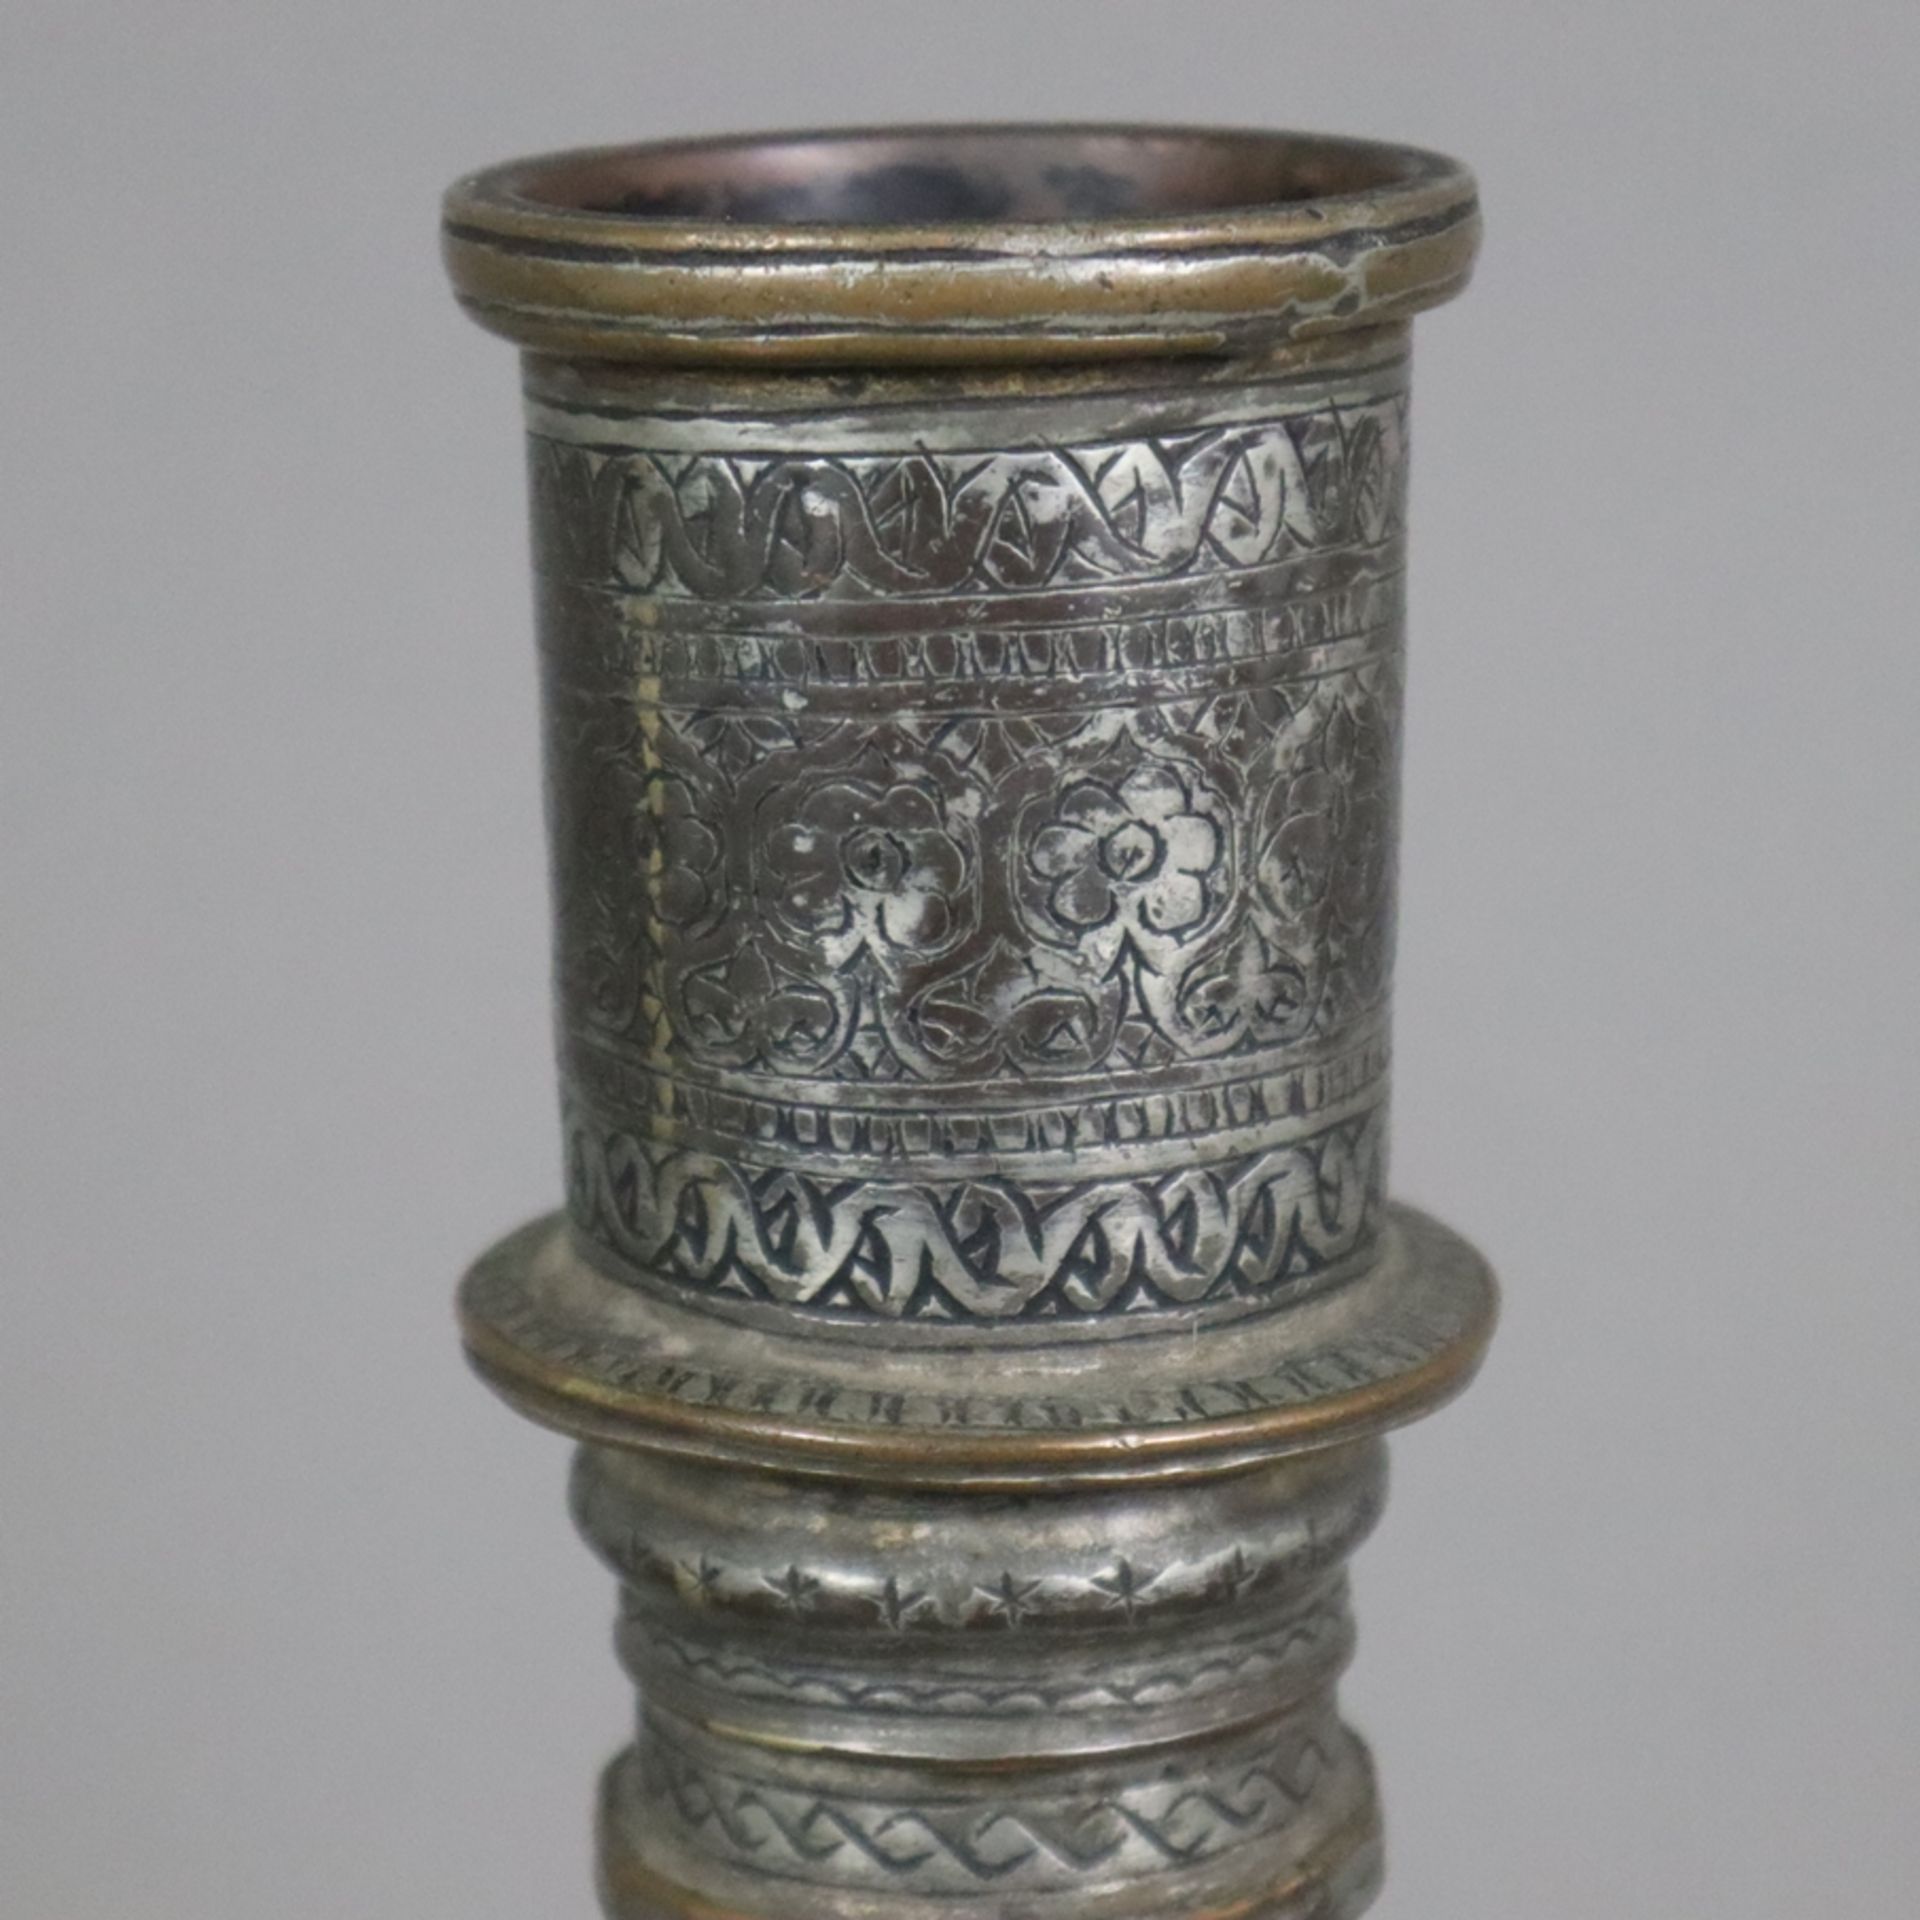 Vase - indopersisch, Kupfer versilbert / verzinnt?, birnförmige Vasenform am Hals durch Ringe gegli - Bild 2 aus 9